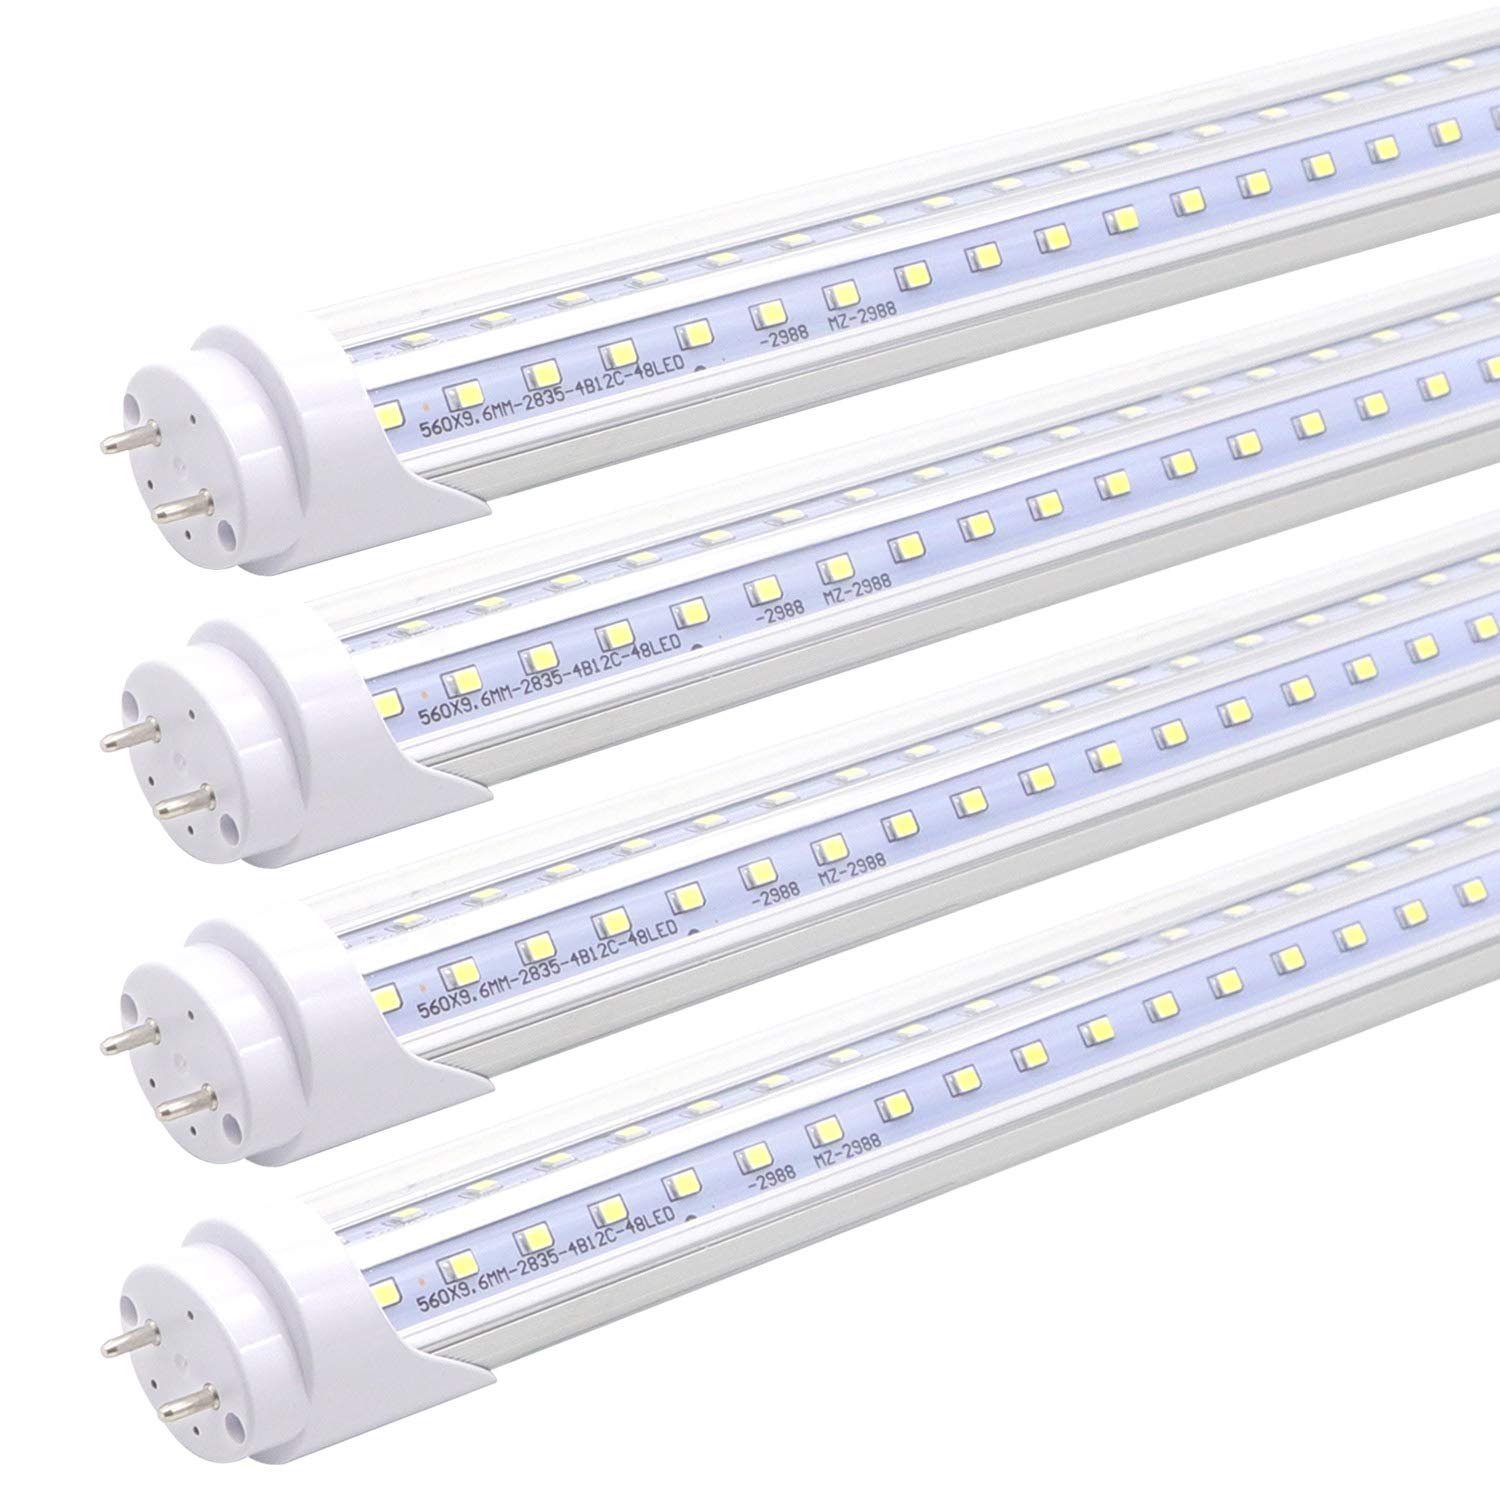 2 Feet 9 Watt T10 LED Tube, Best LED Replacement for Fluorescent Tubes